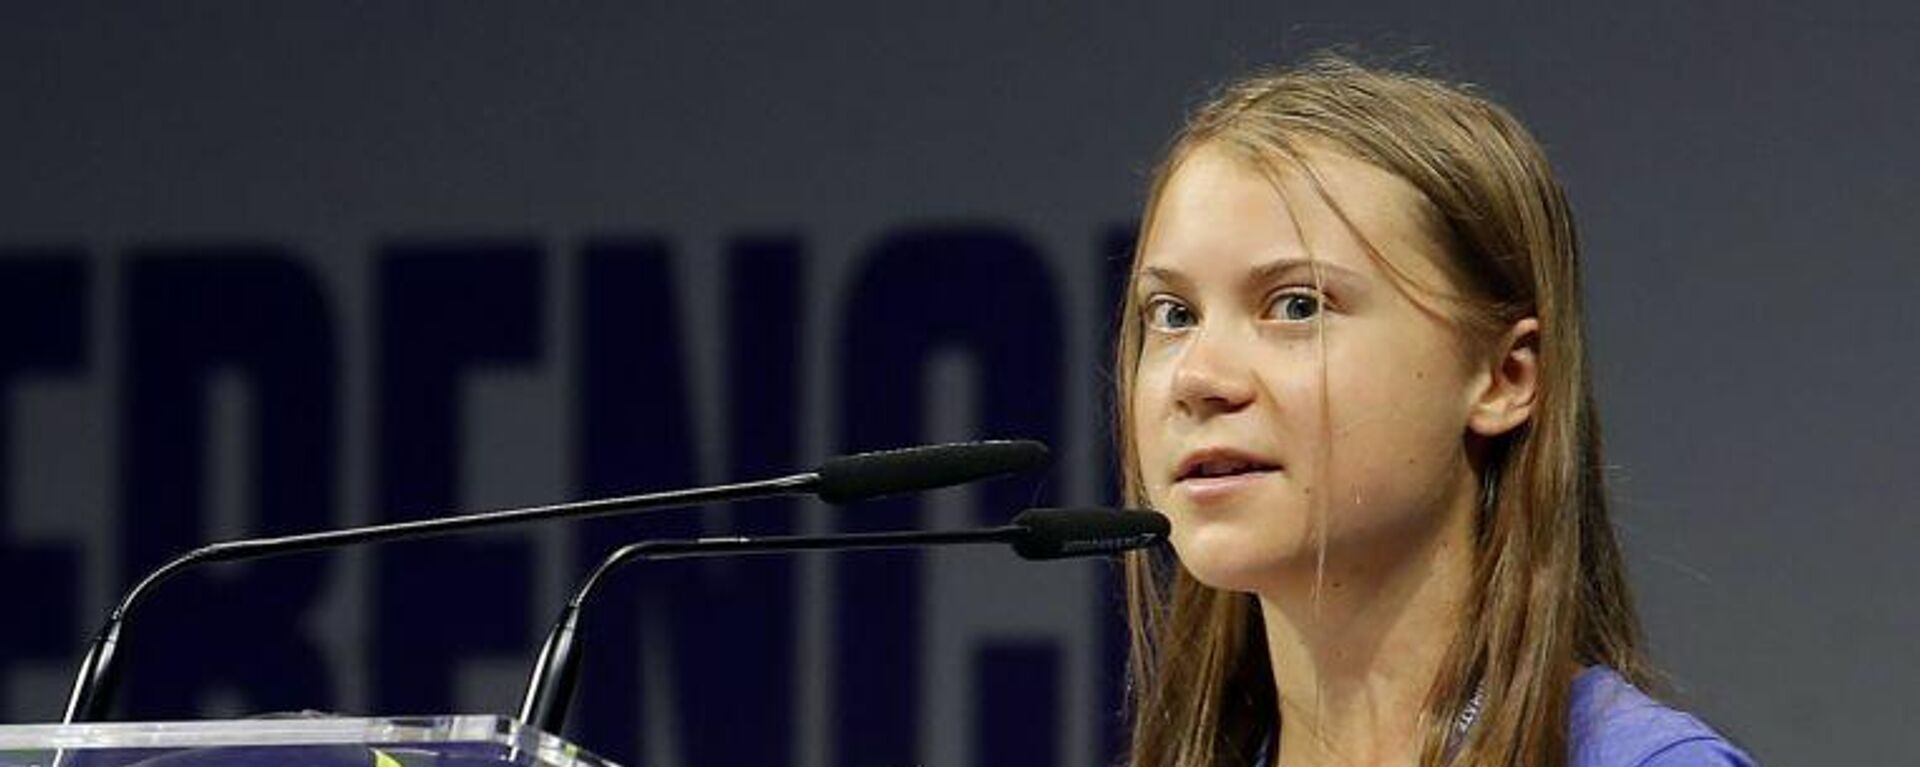 Çevre aktivisti Greta Thunberg, dünya liderlerini 'boş vaatler vermekle' suçladı - Sputnik Türkiye, 1920, 28.09.2021